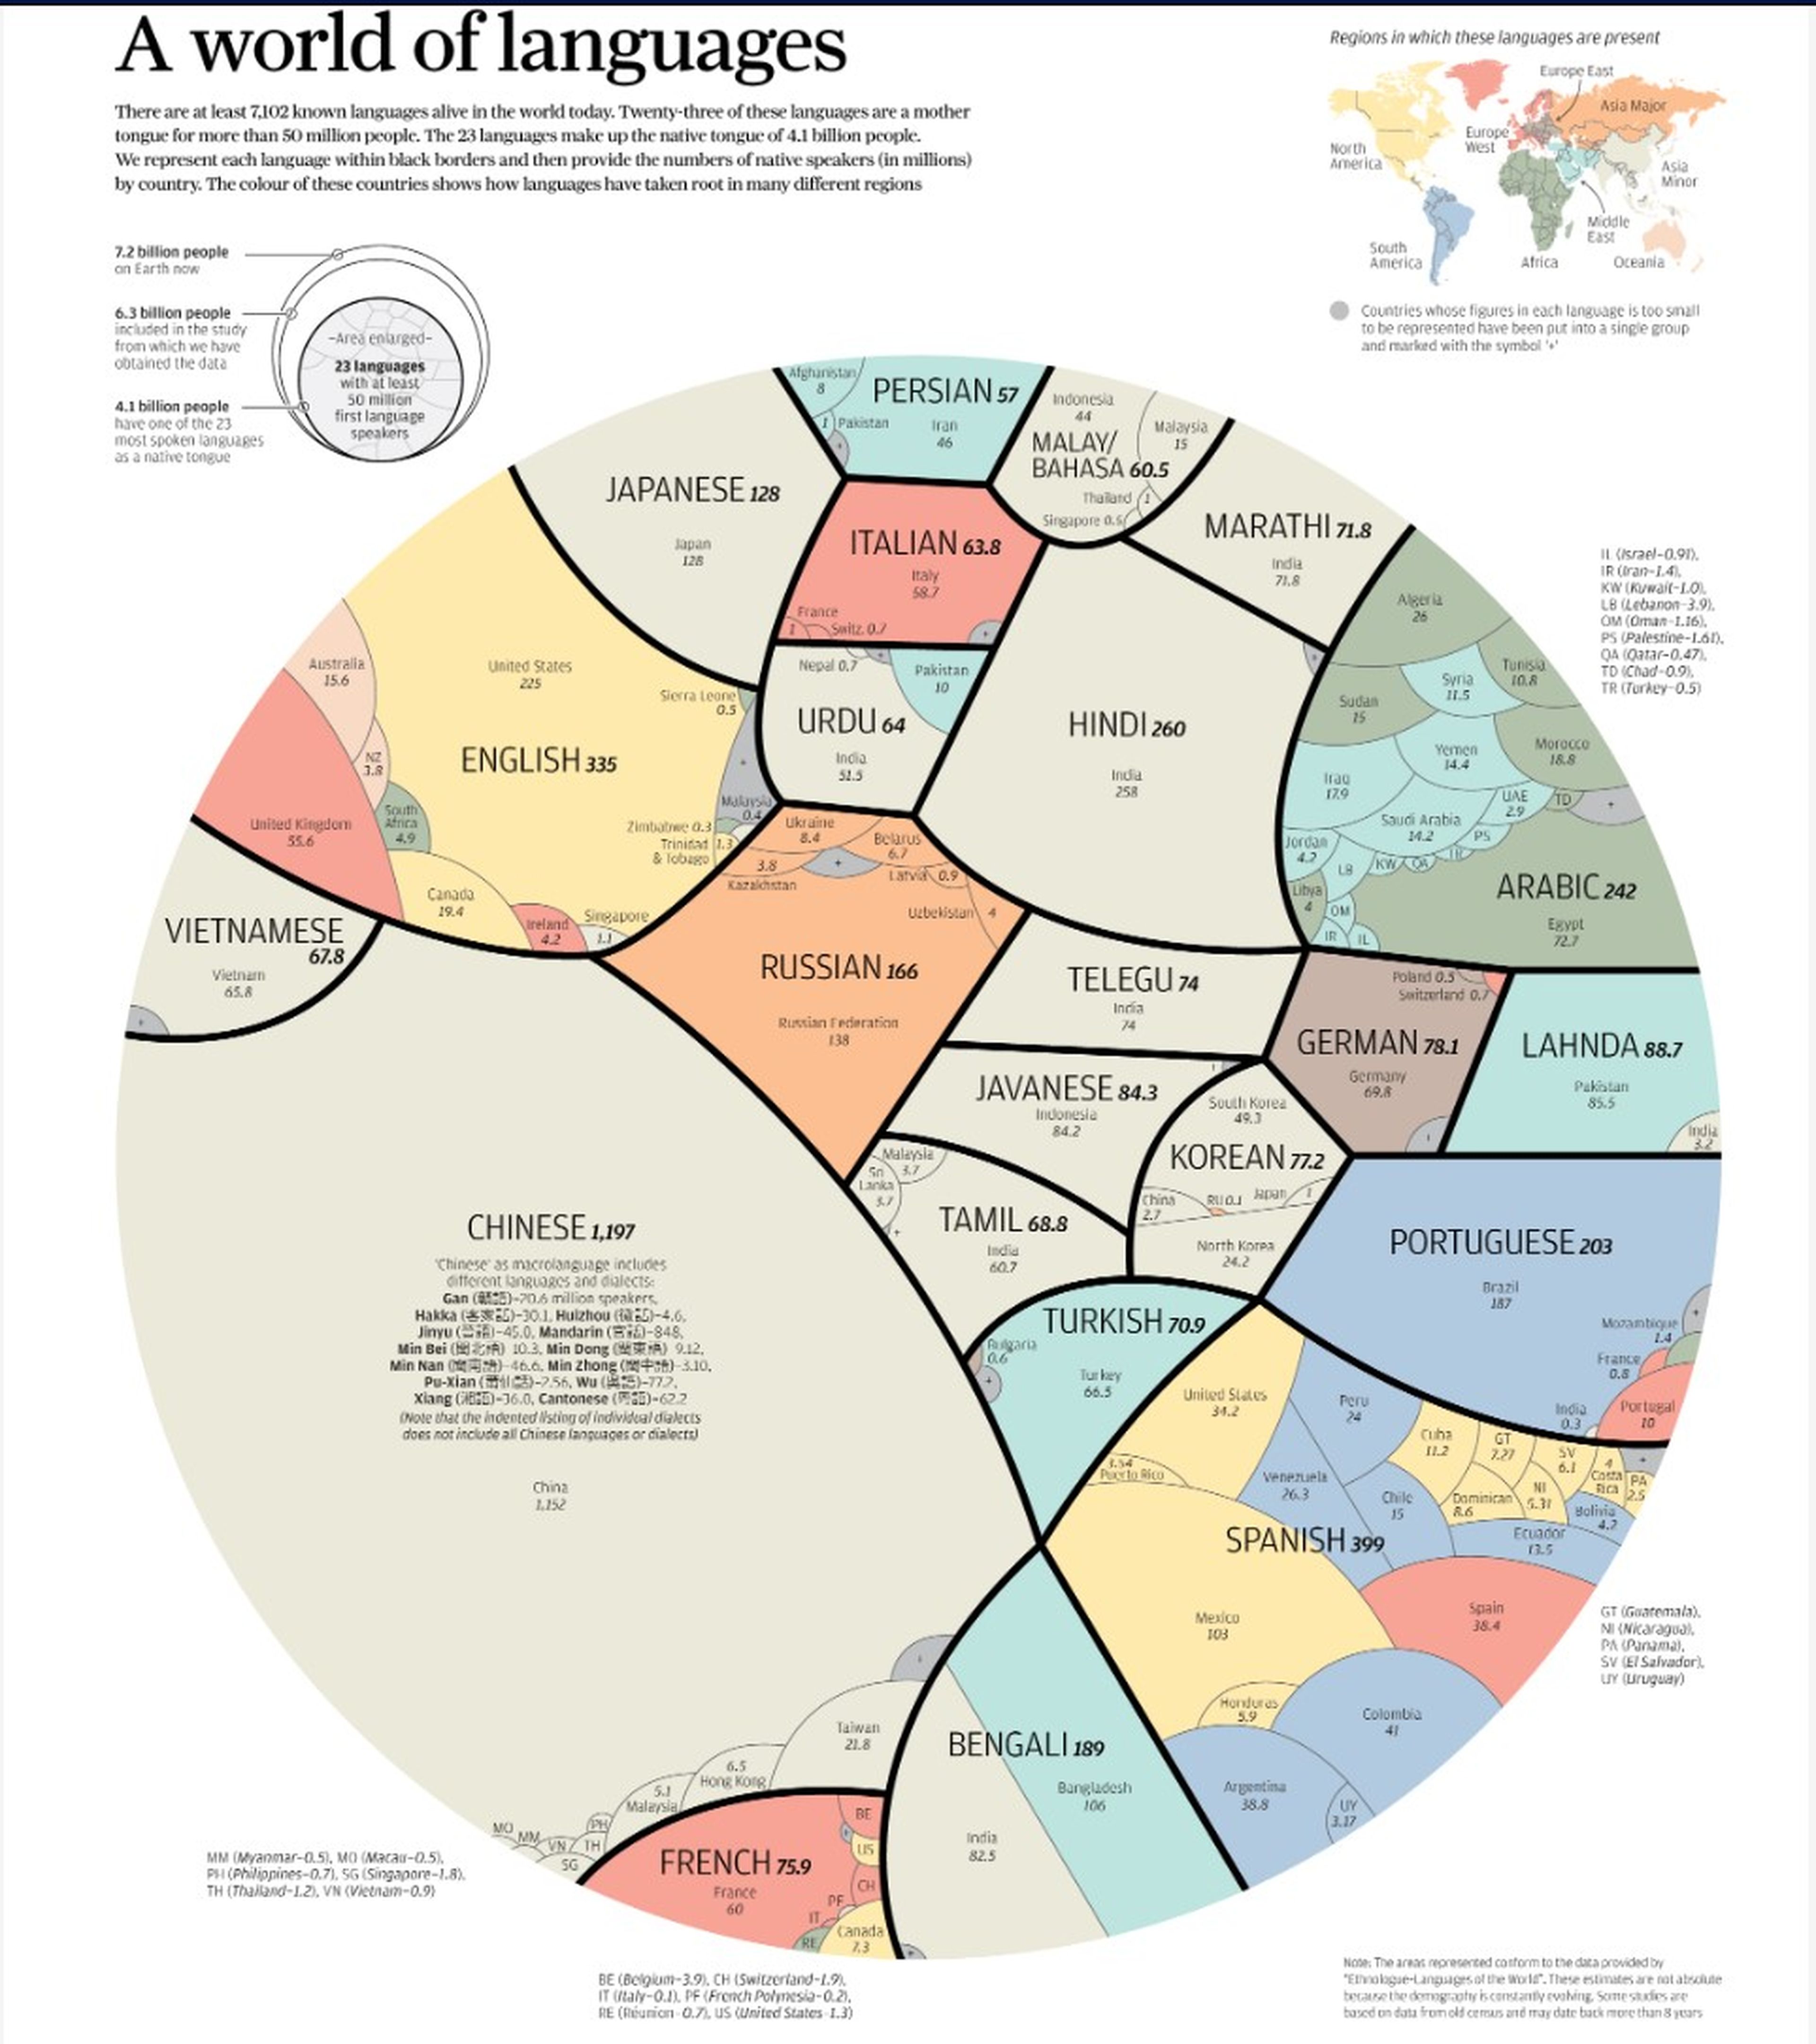 El chino y el español entre los idiomas más hablados